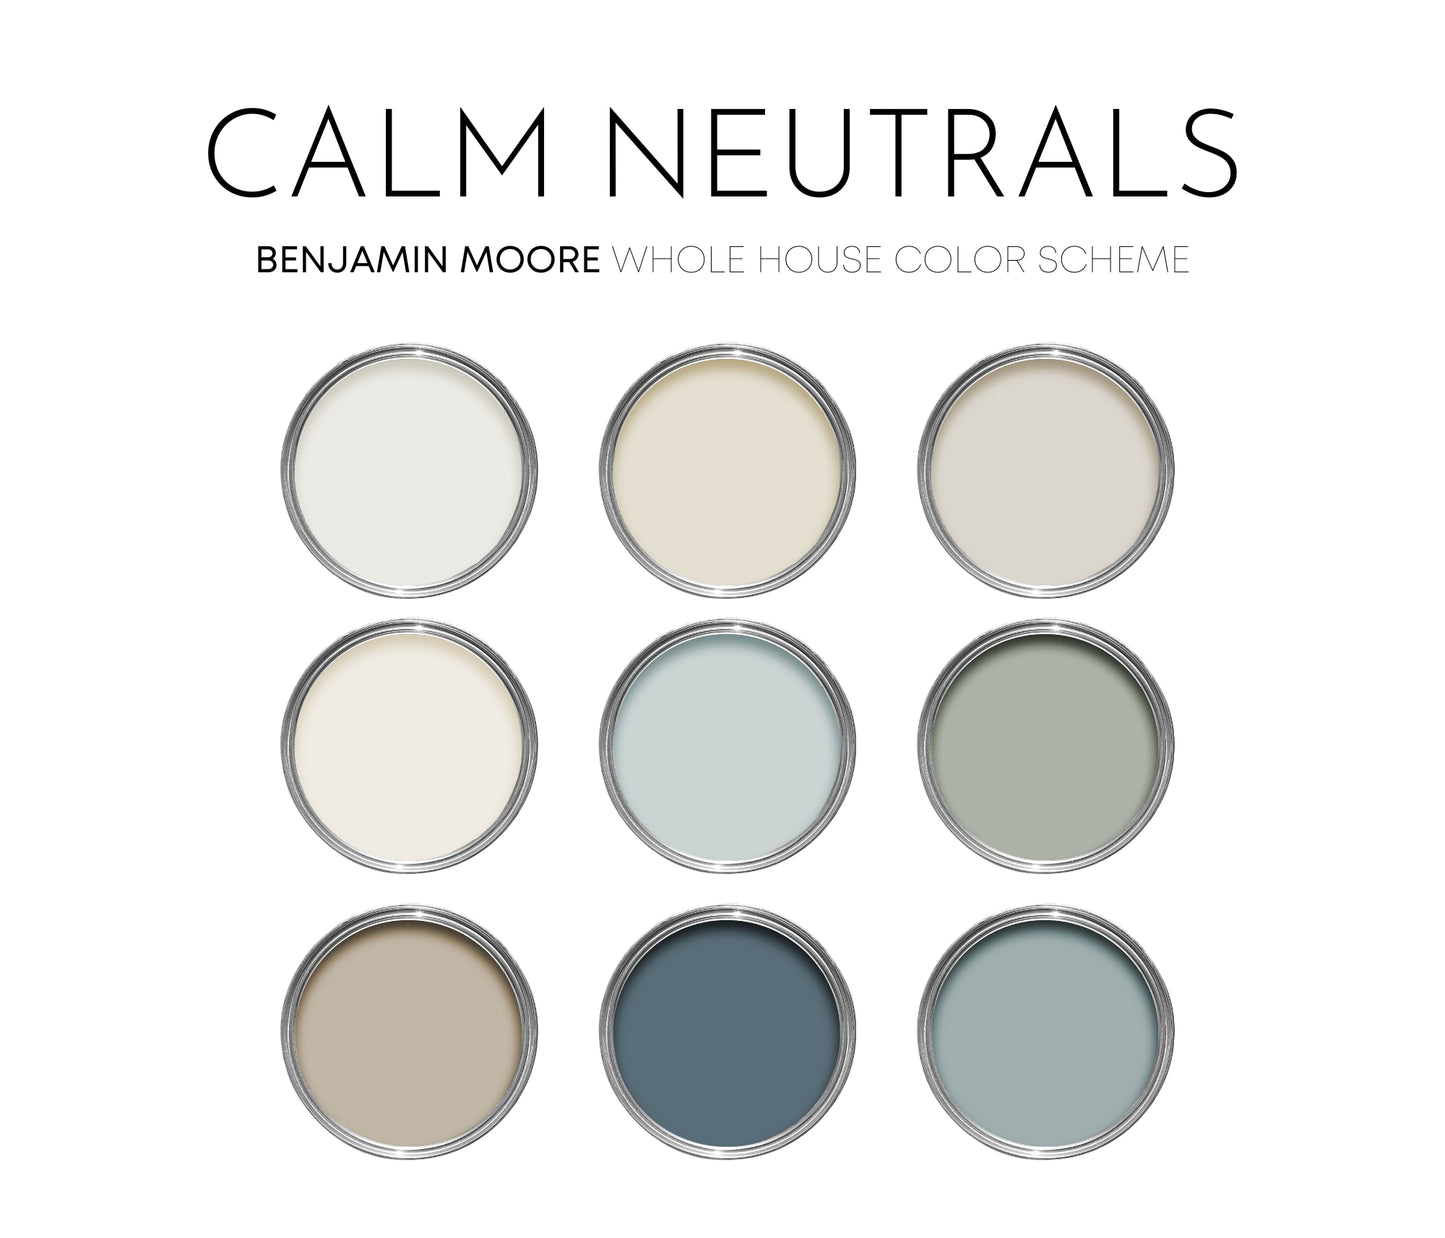 Calm Neutrals Benjamin Moore Paint Palette, Calm Neutral Interior Paint Colors, Beach House Coastal Color Scheme, Pale Oak